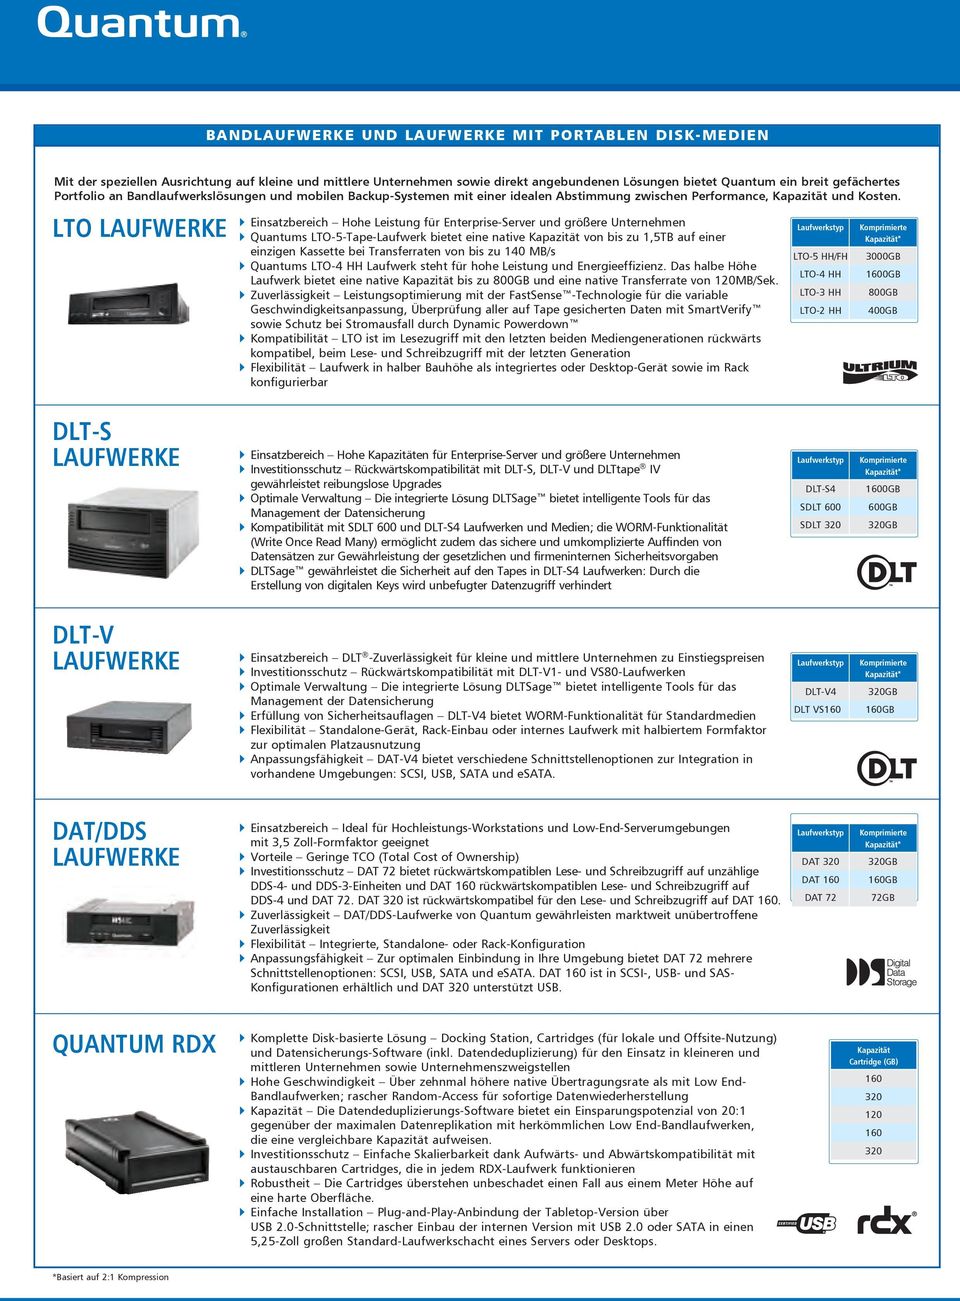 LTO LAUFWERKE ` ` Einsatzbereich Hohe Leistung für Enterprise-Server und größere Unternehmen Quantums LTO-5-Tape-Laufwerk bietet eine native Kapazität von bis zu 1,5TB auf einer einzigen Kassette bei